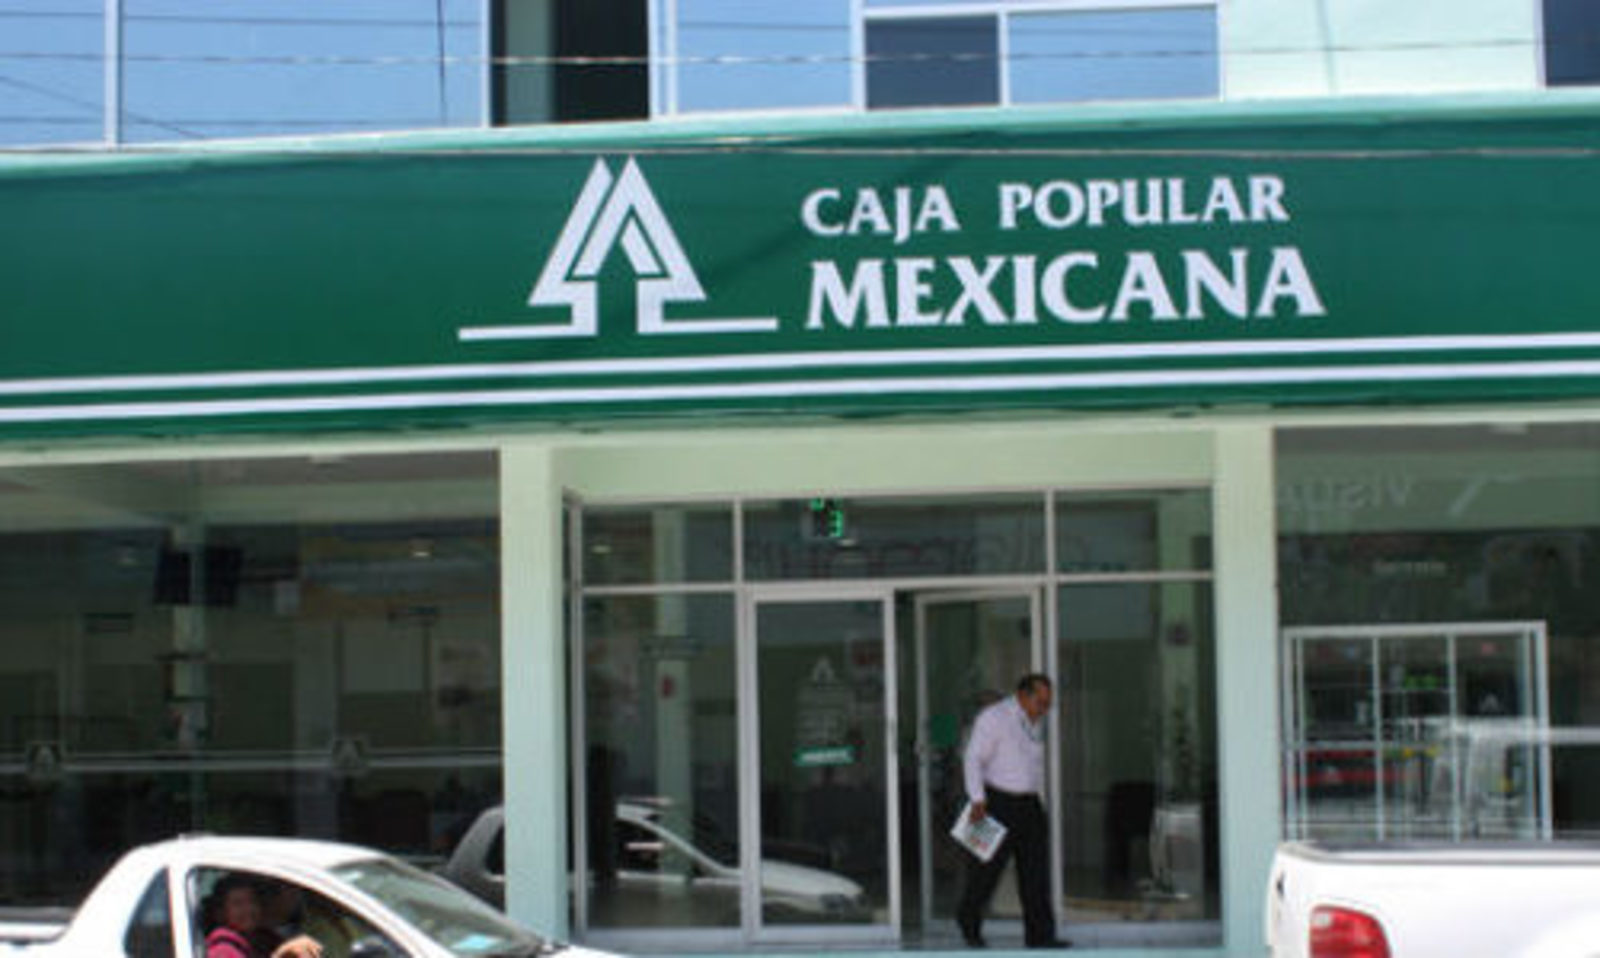 Pagos. Caja Popular Mexicana busca impulsar la inclusión financiera con la eliminación del pago de comisiones. (ARCHIVO)